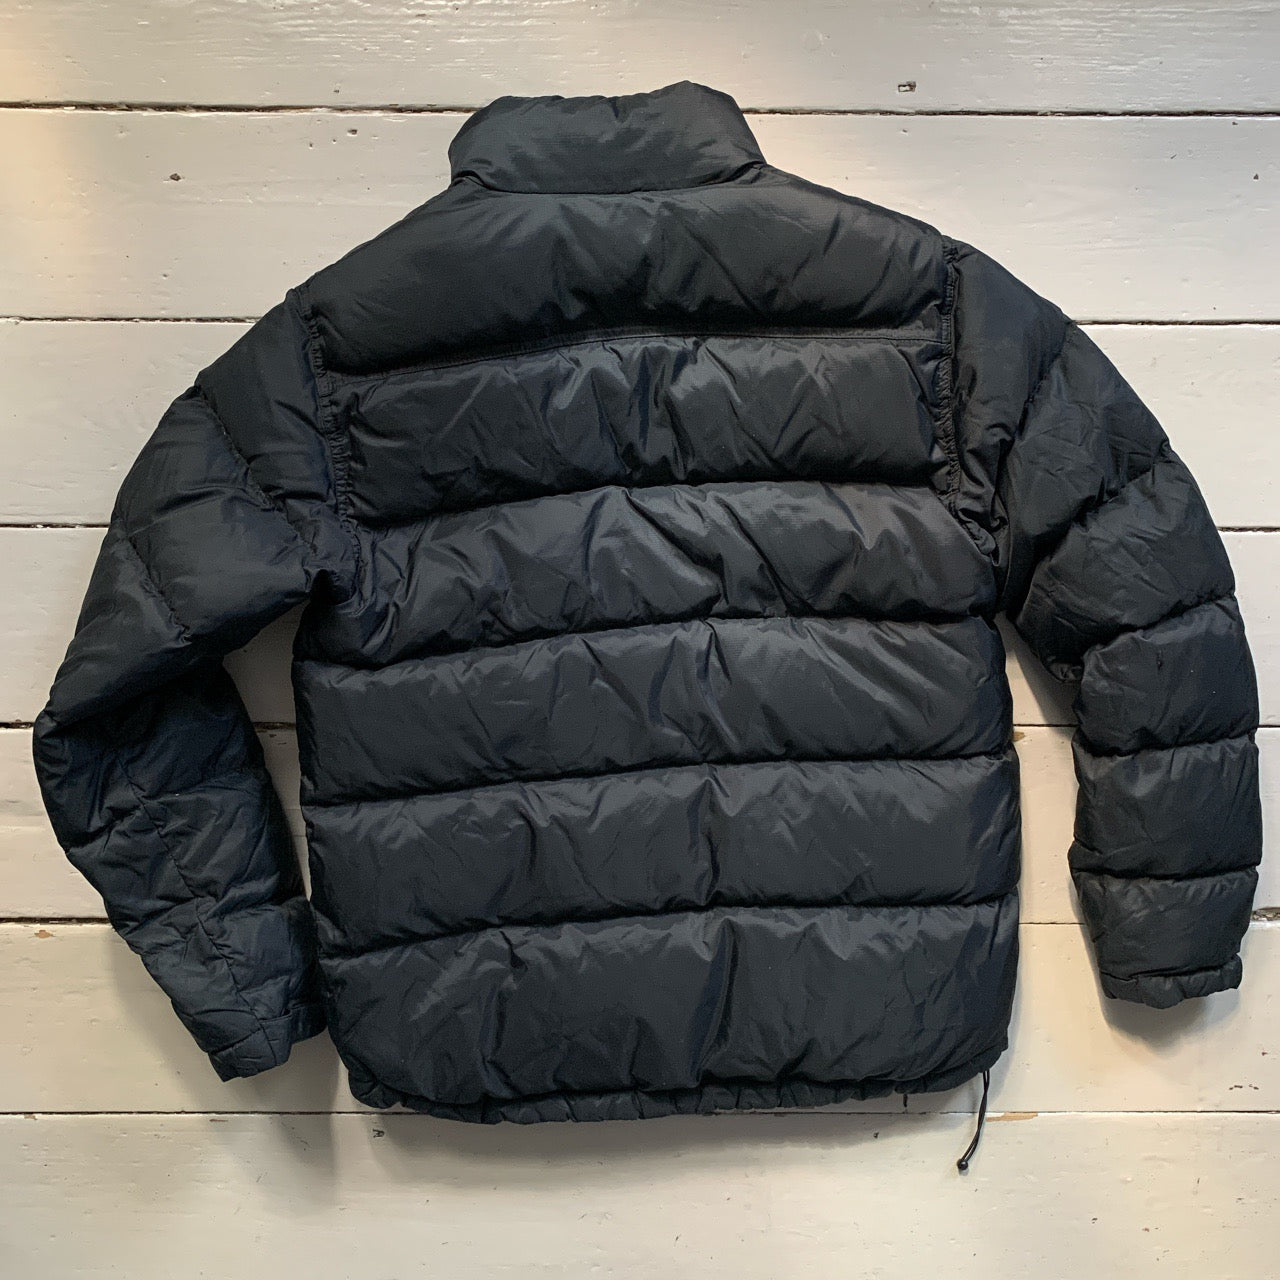 Timberland Puffer Jacket Black (Small)